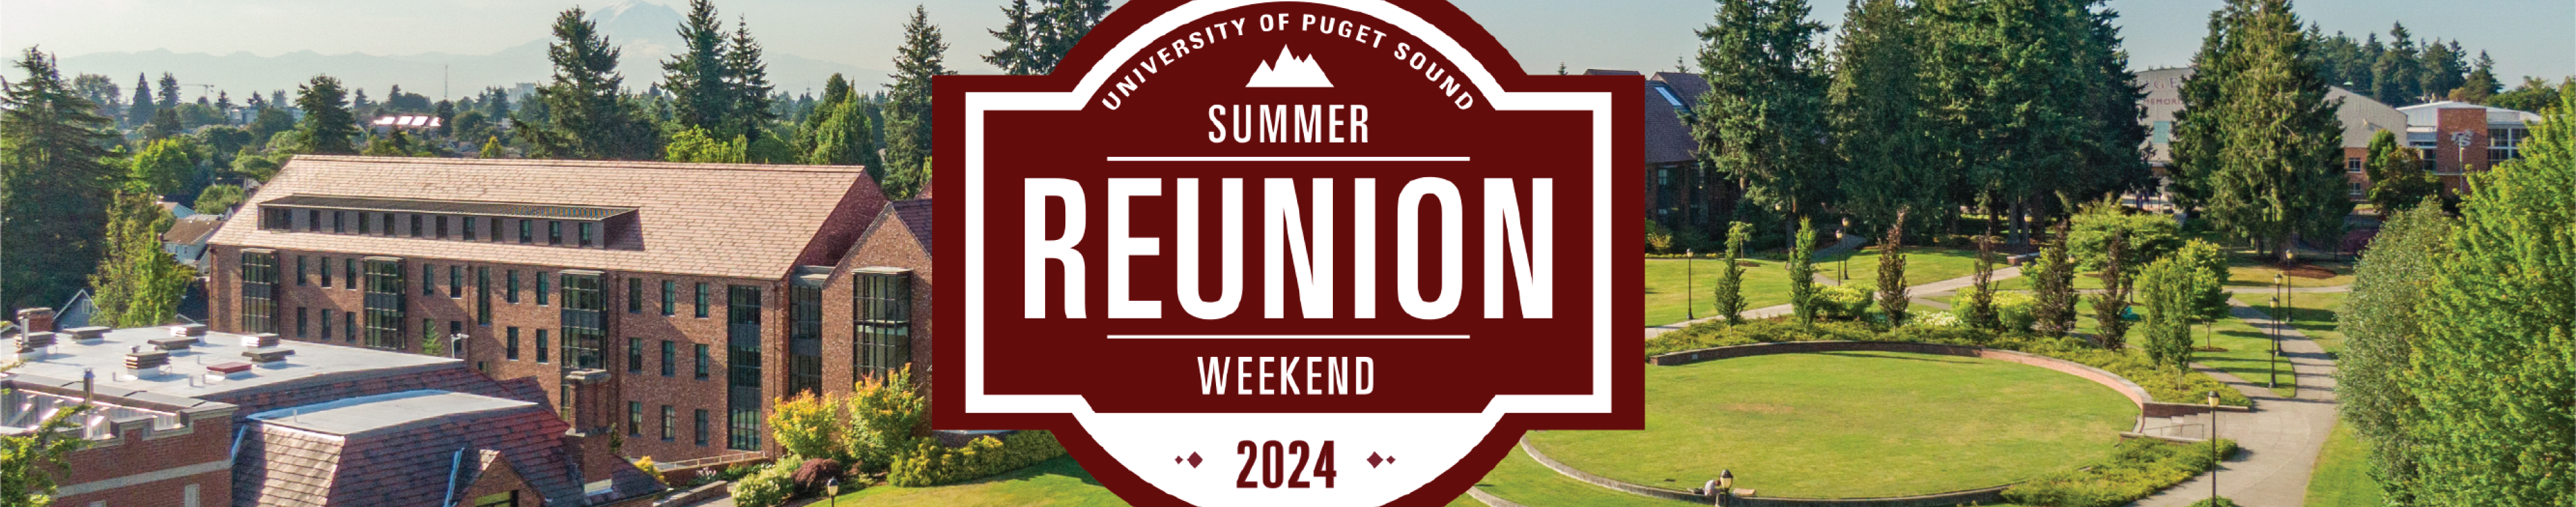 Summer Reunion Weekend 2024